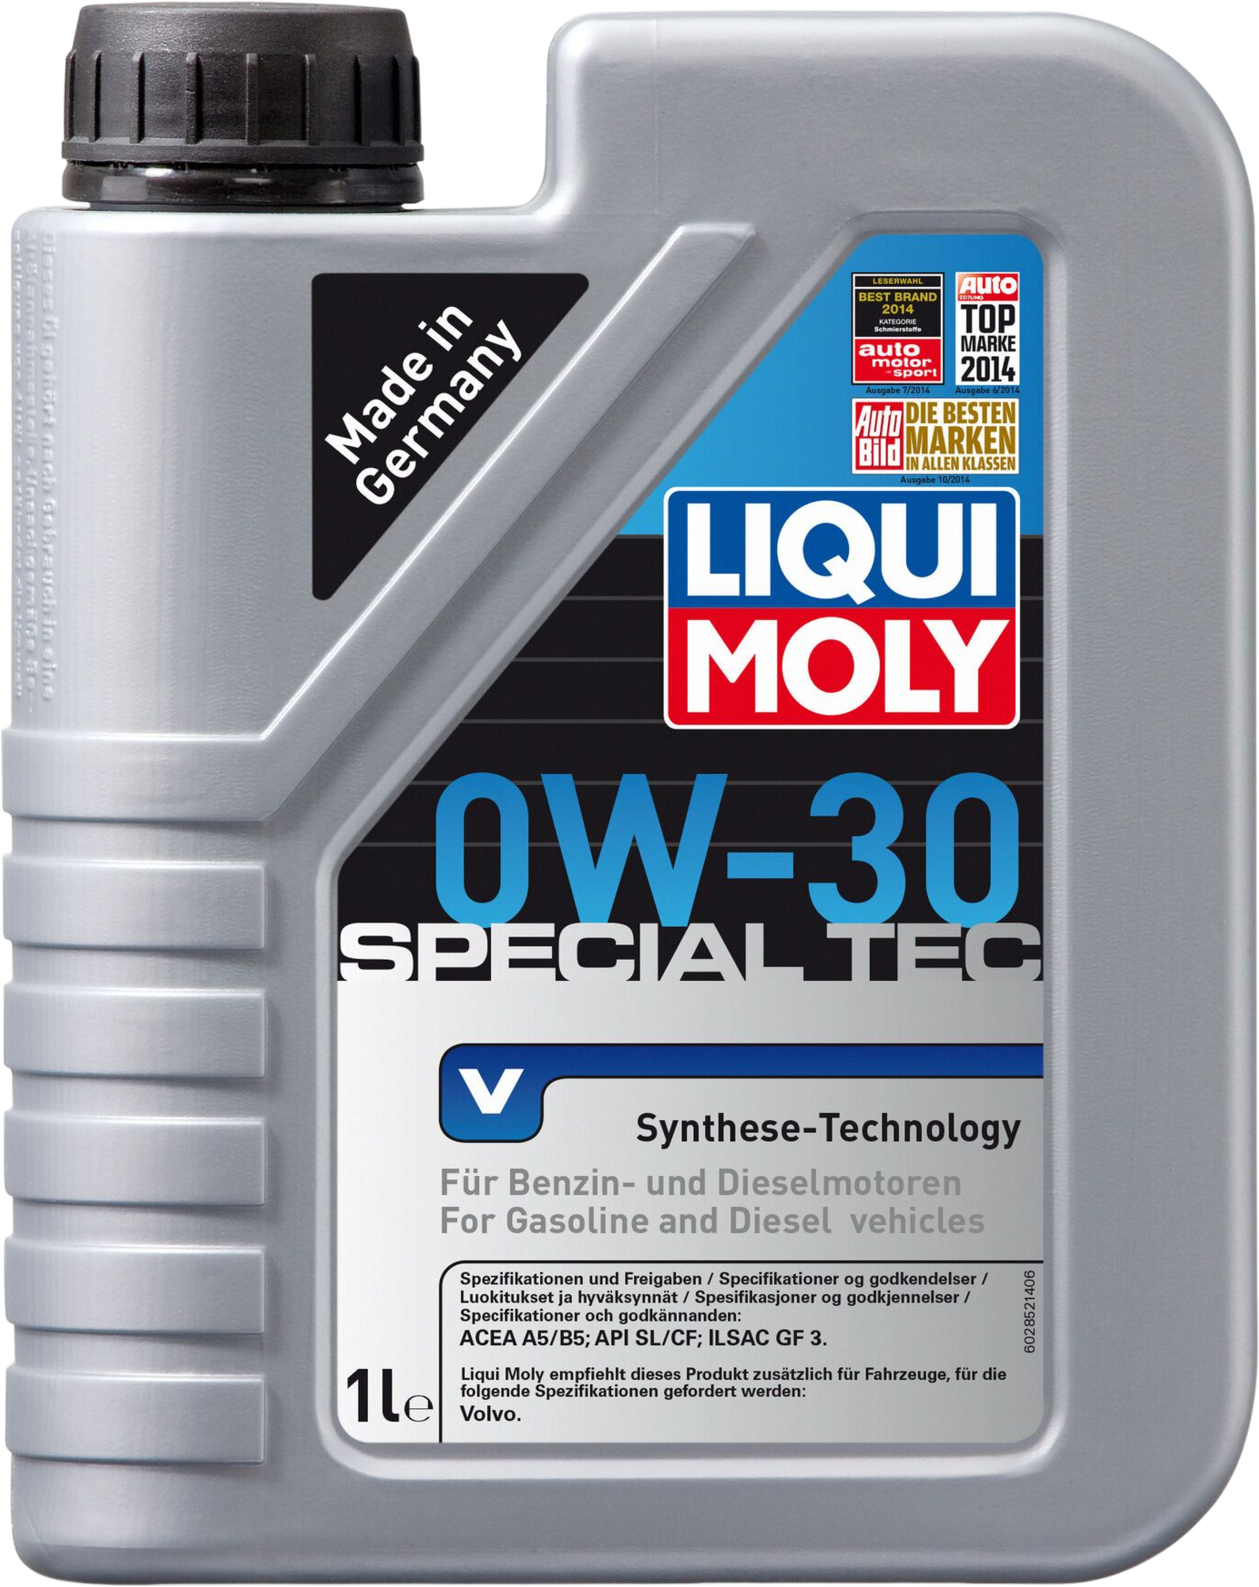 Liqui Moly Special Tec V 0W-30, 6 x 1 lt detail 2